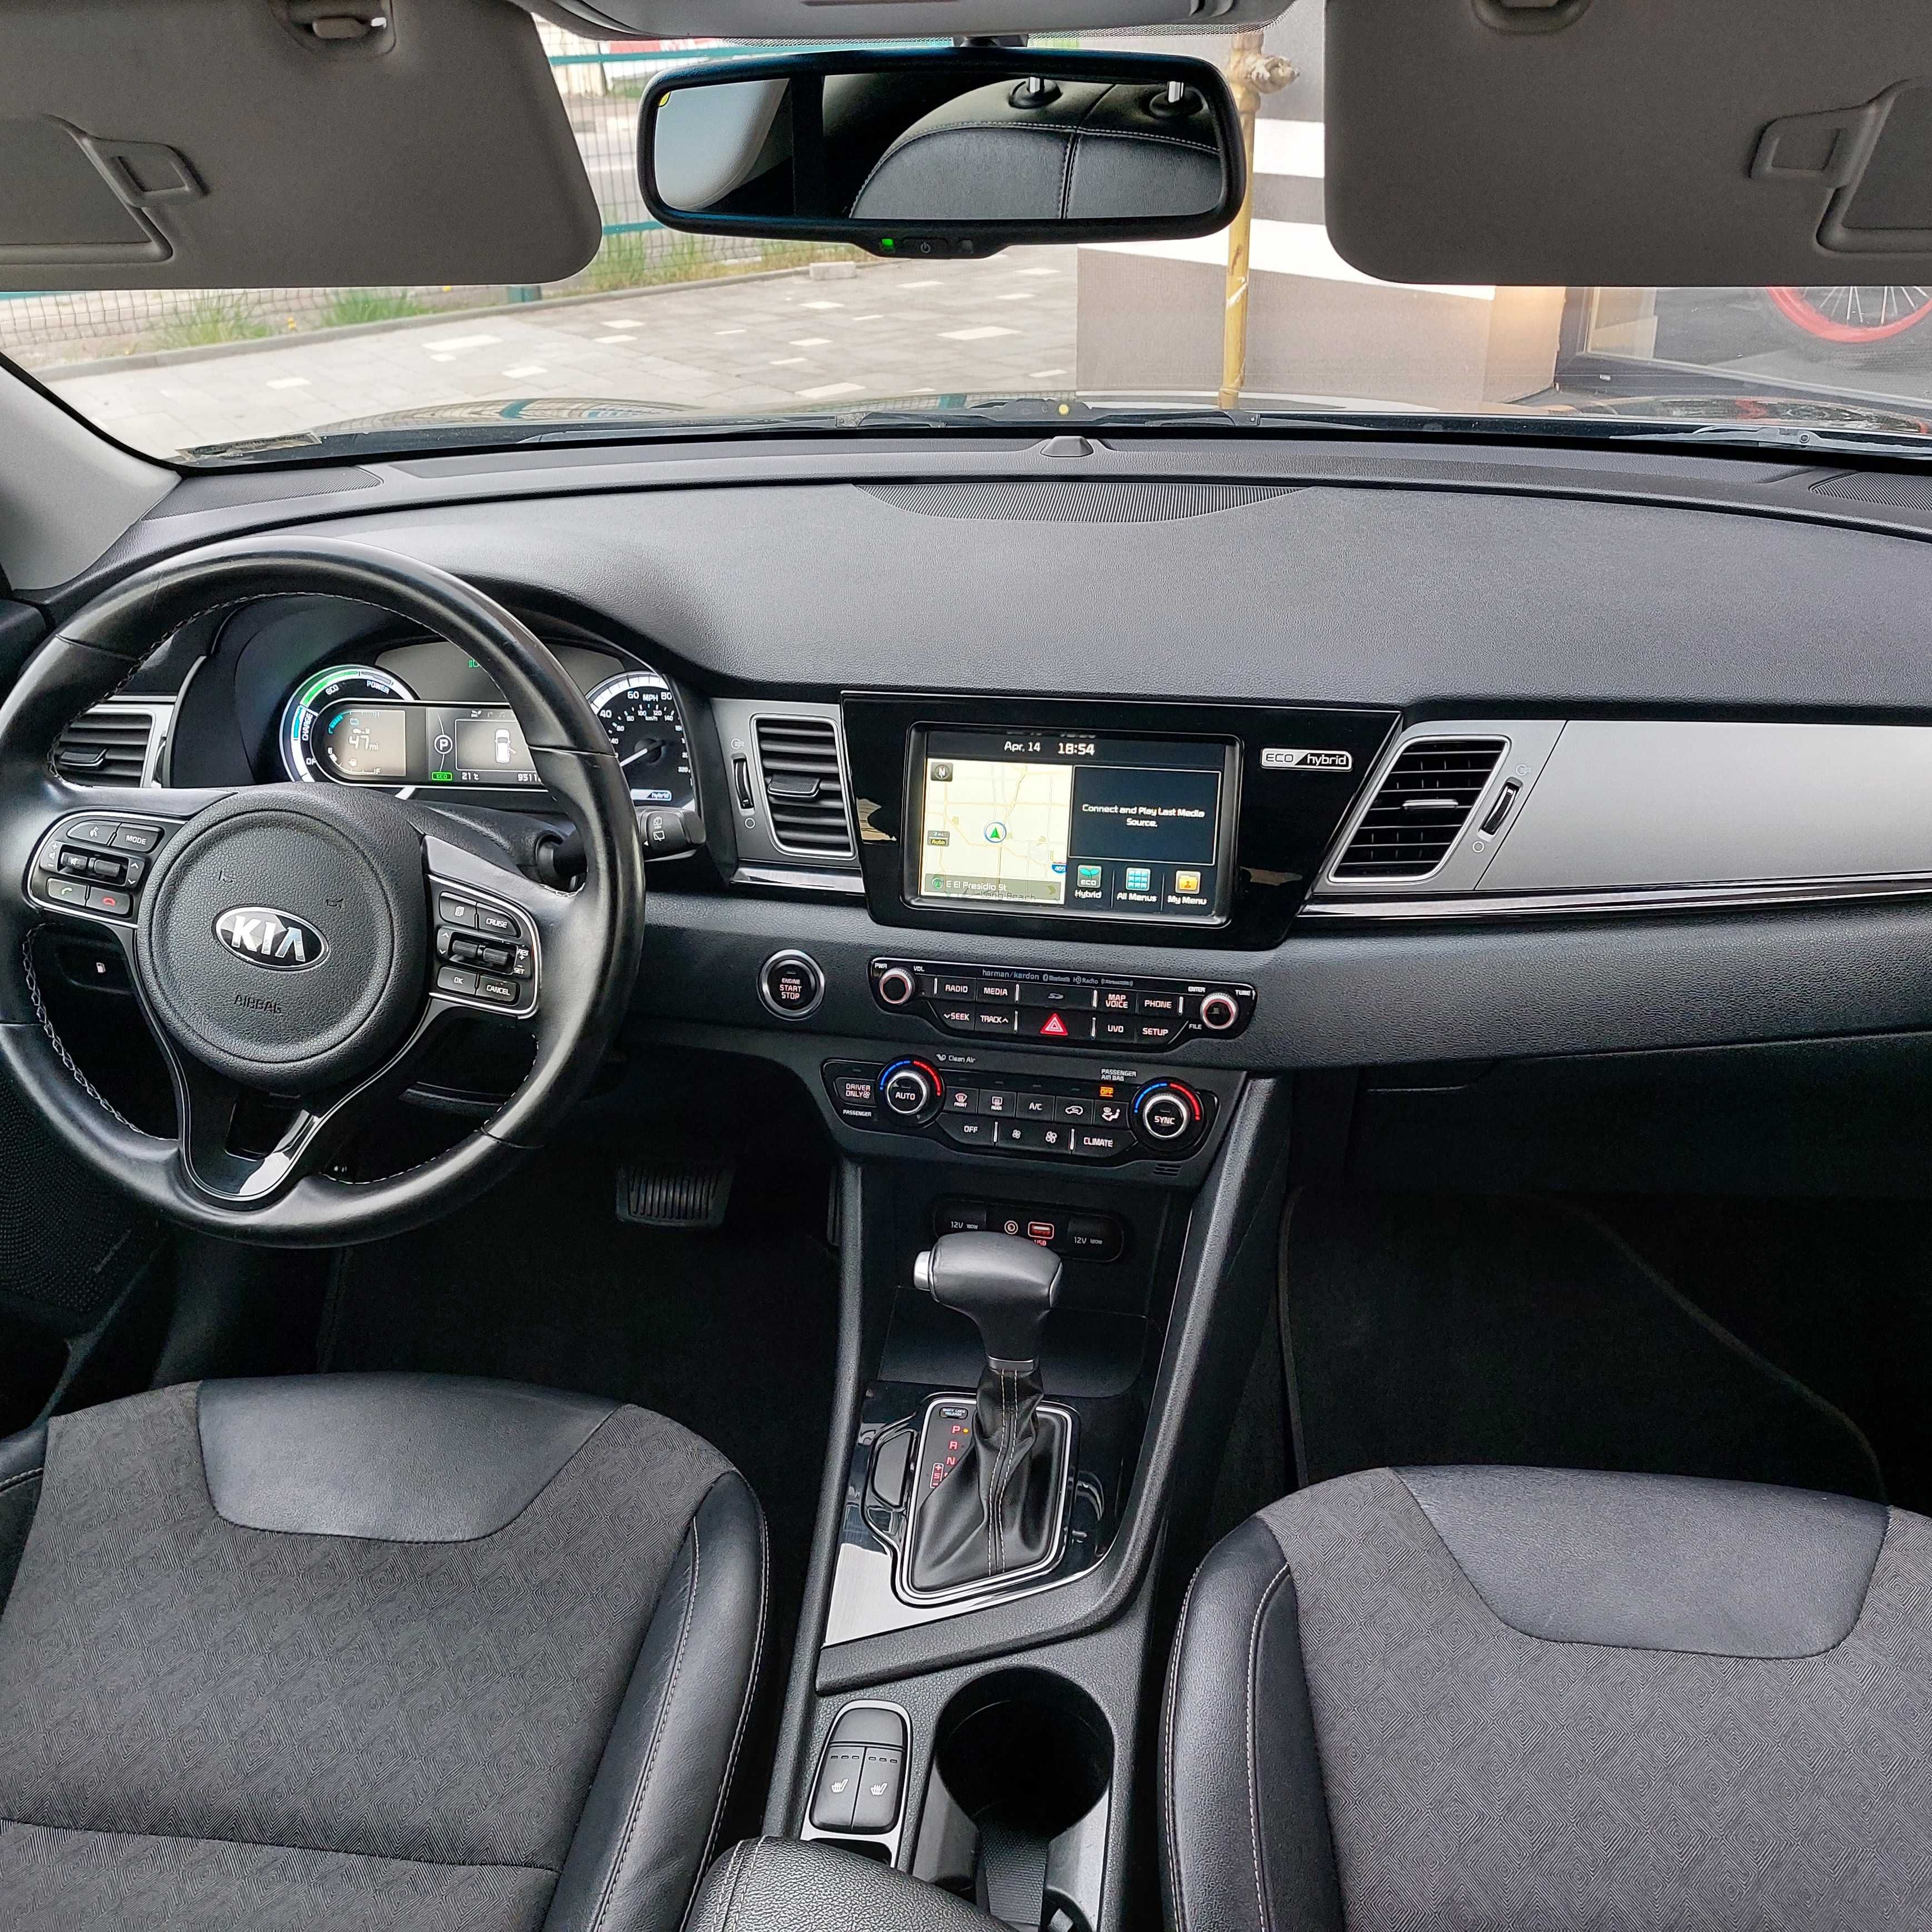 Автомобіль Kia Niro TOURING гібрийд, 2018 рік випуску, ідеальне авто